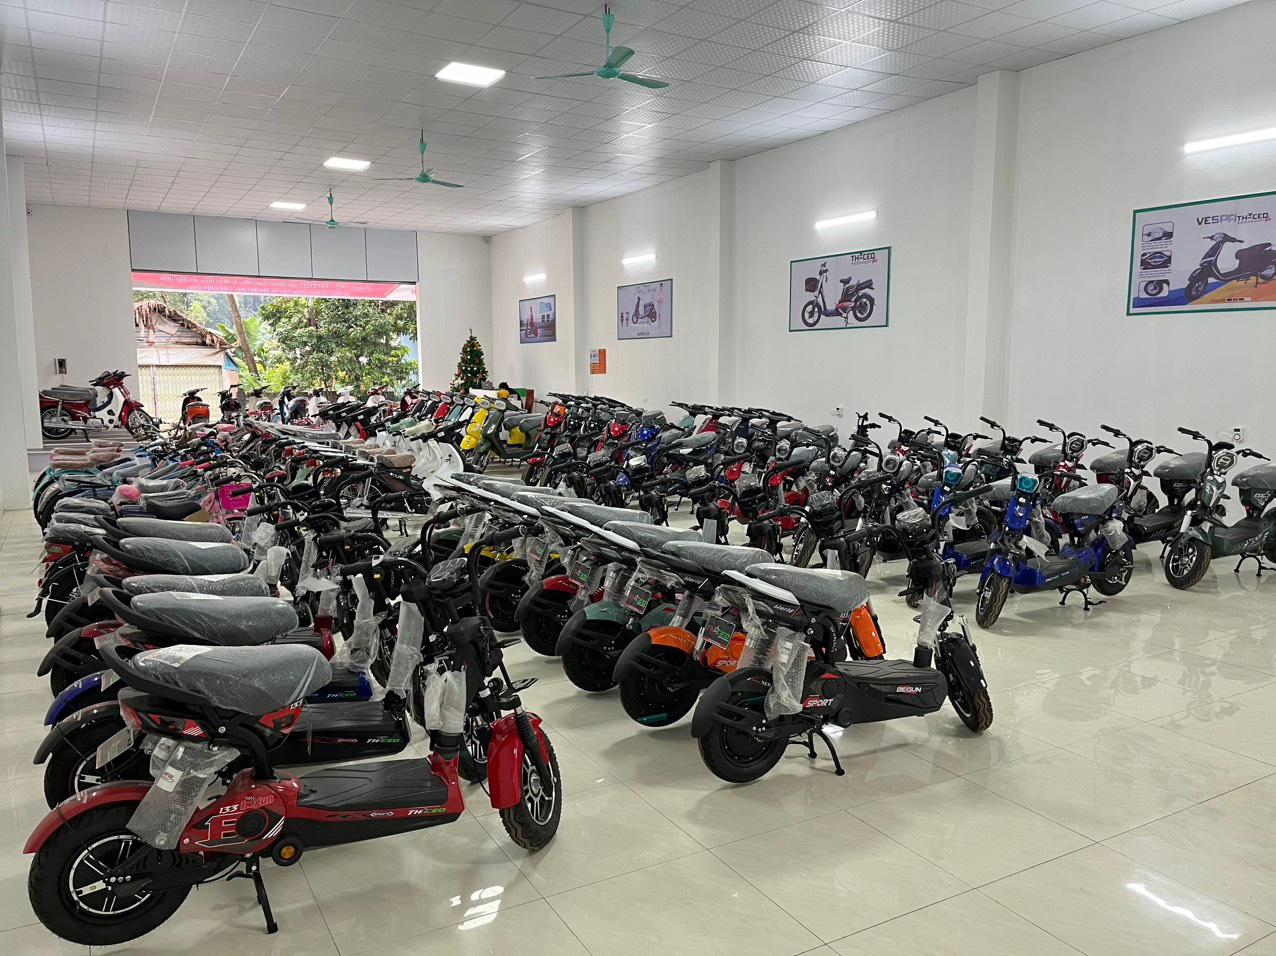 Nhân dịp khai trương, mọi khách hàng khi mua xe 50cc tại cửa hàng sẽ được giảm giá từ 500.000 đến 1.000.000 đồng